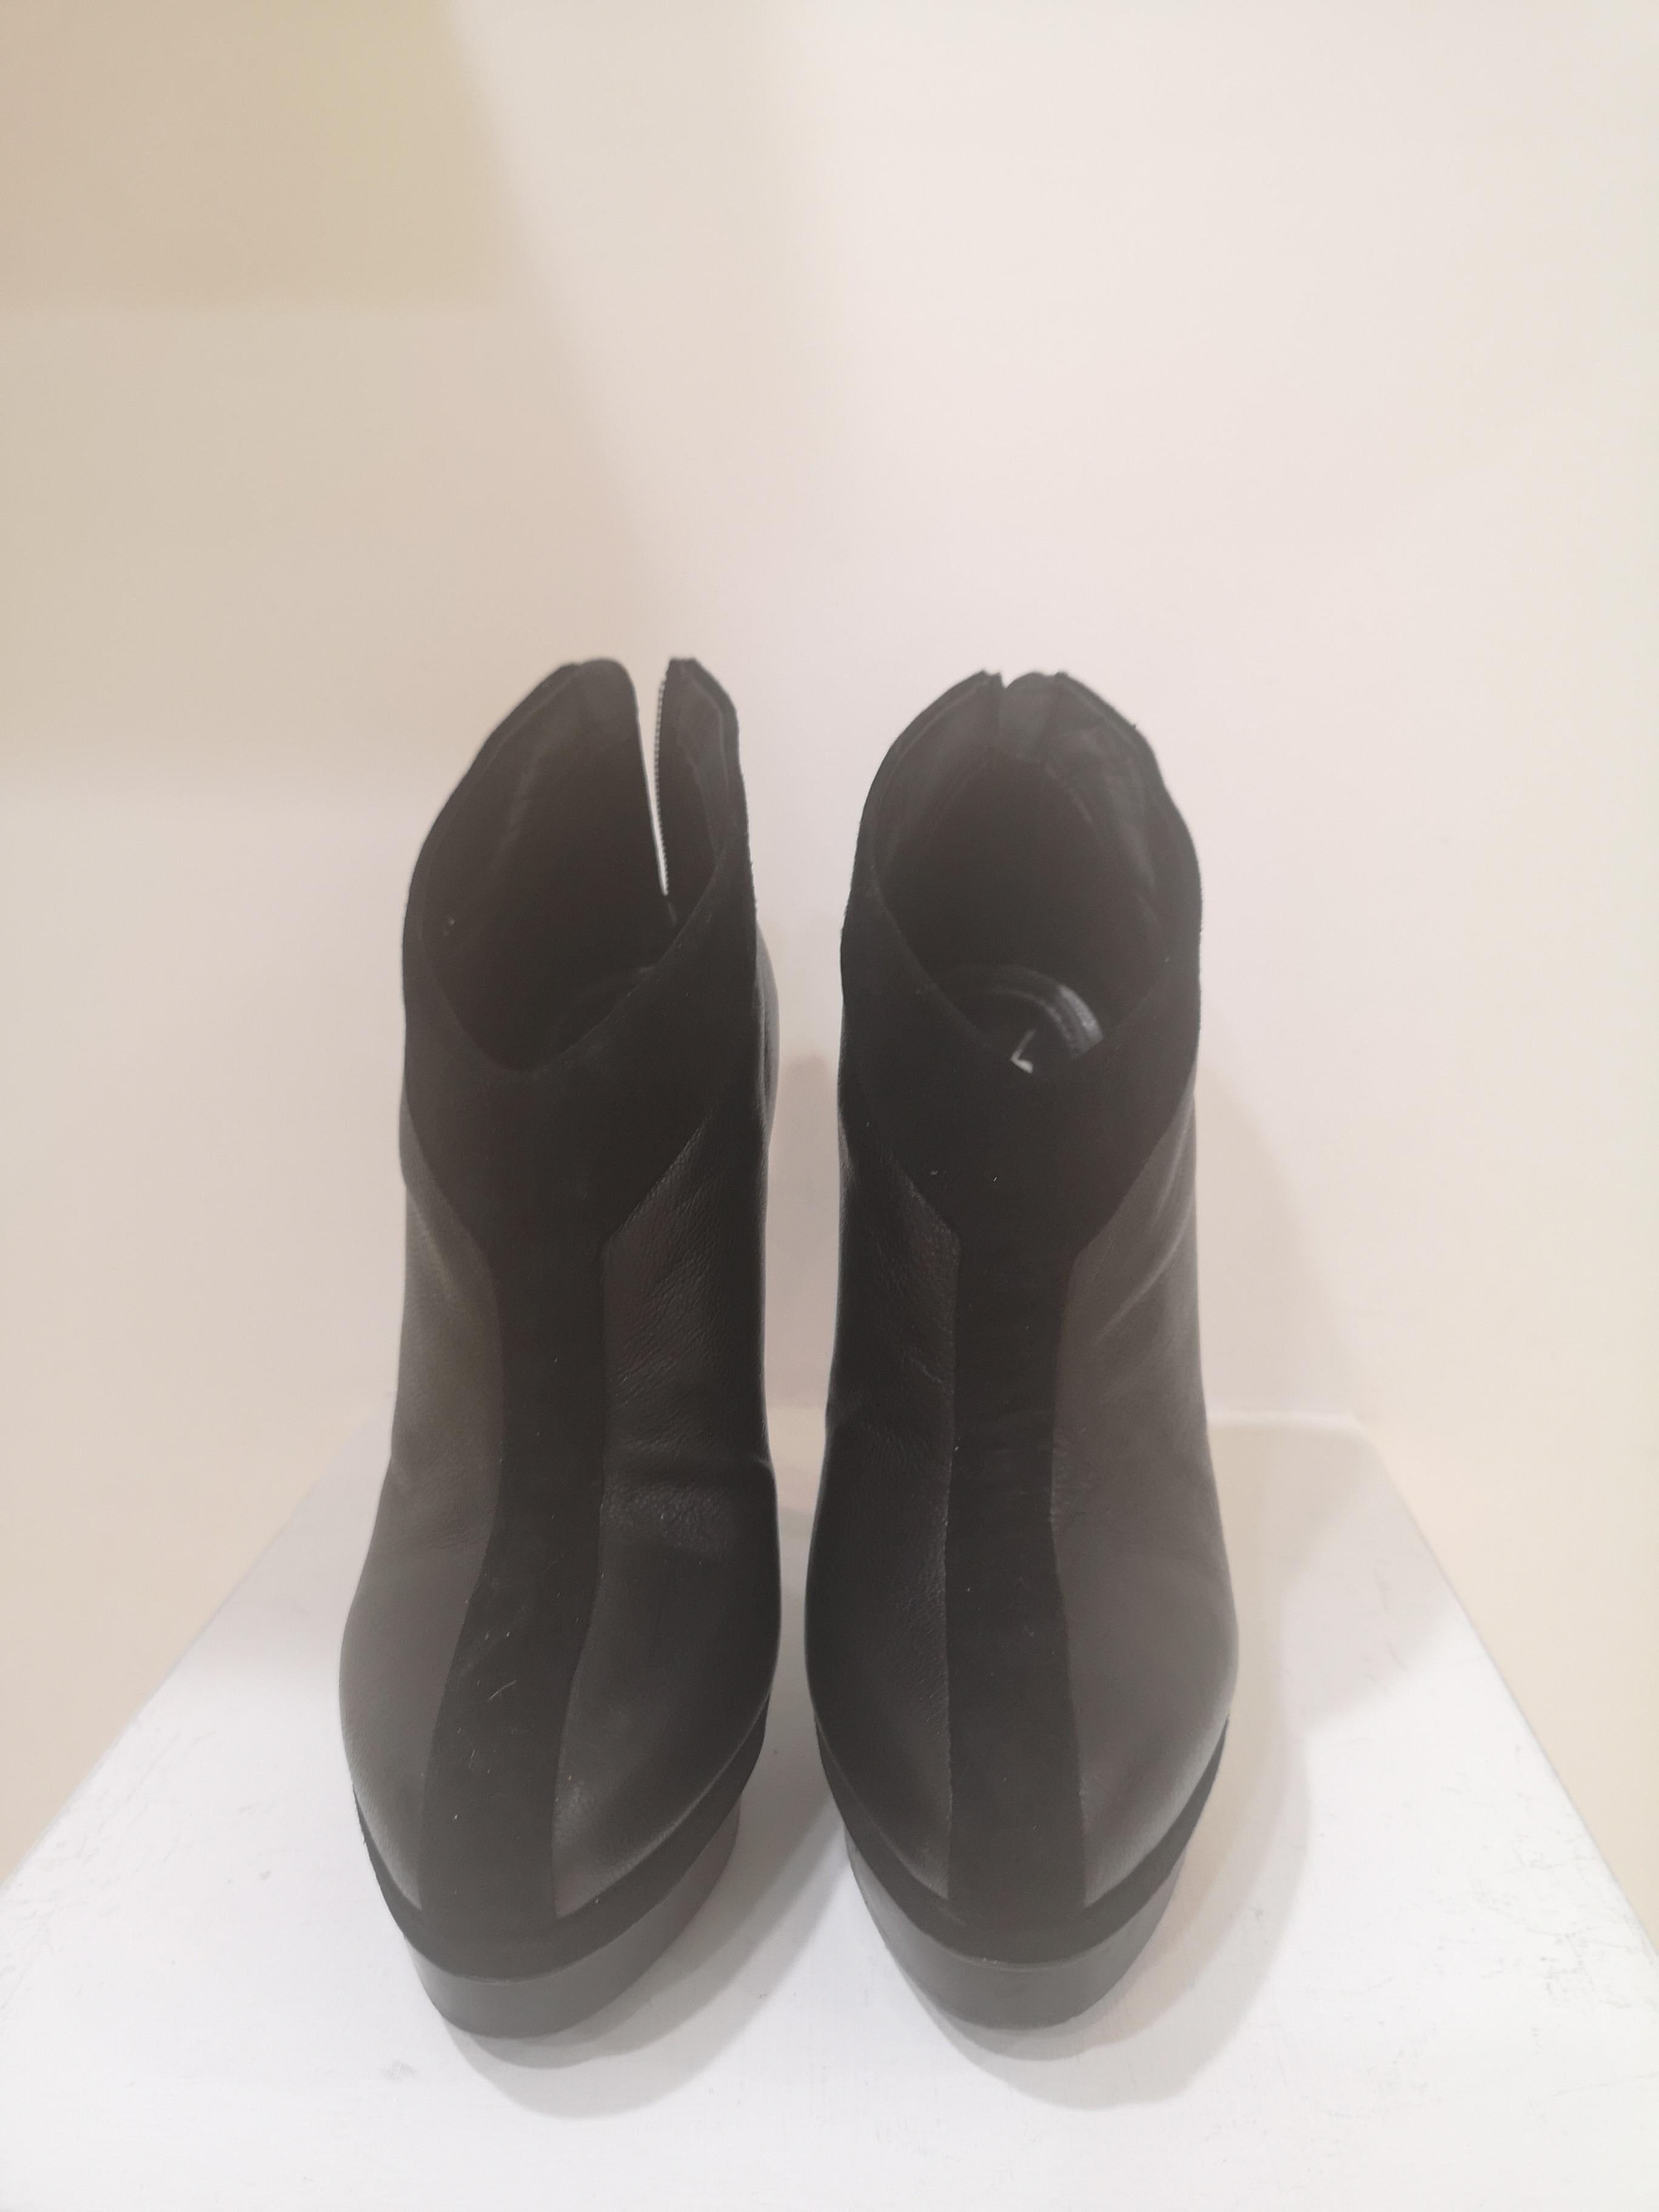 Yves Saint Laurent Black shoes
size it 39